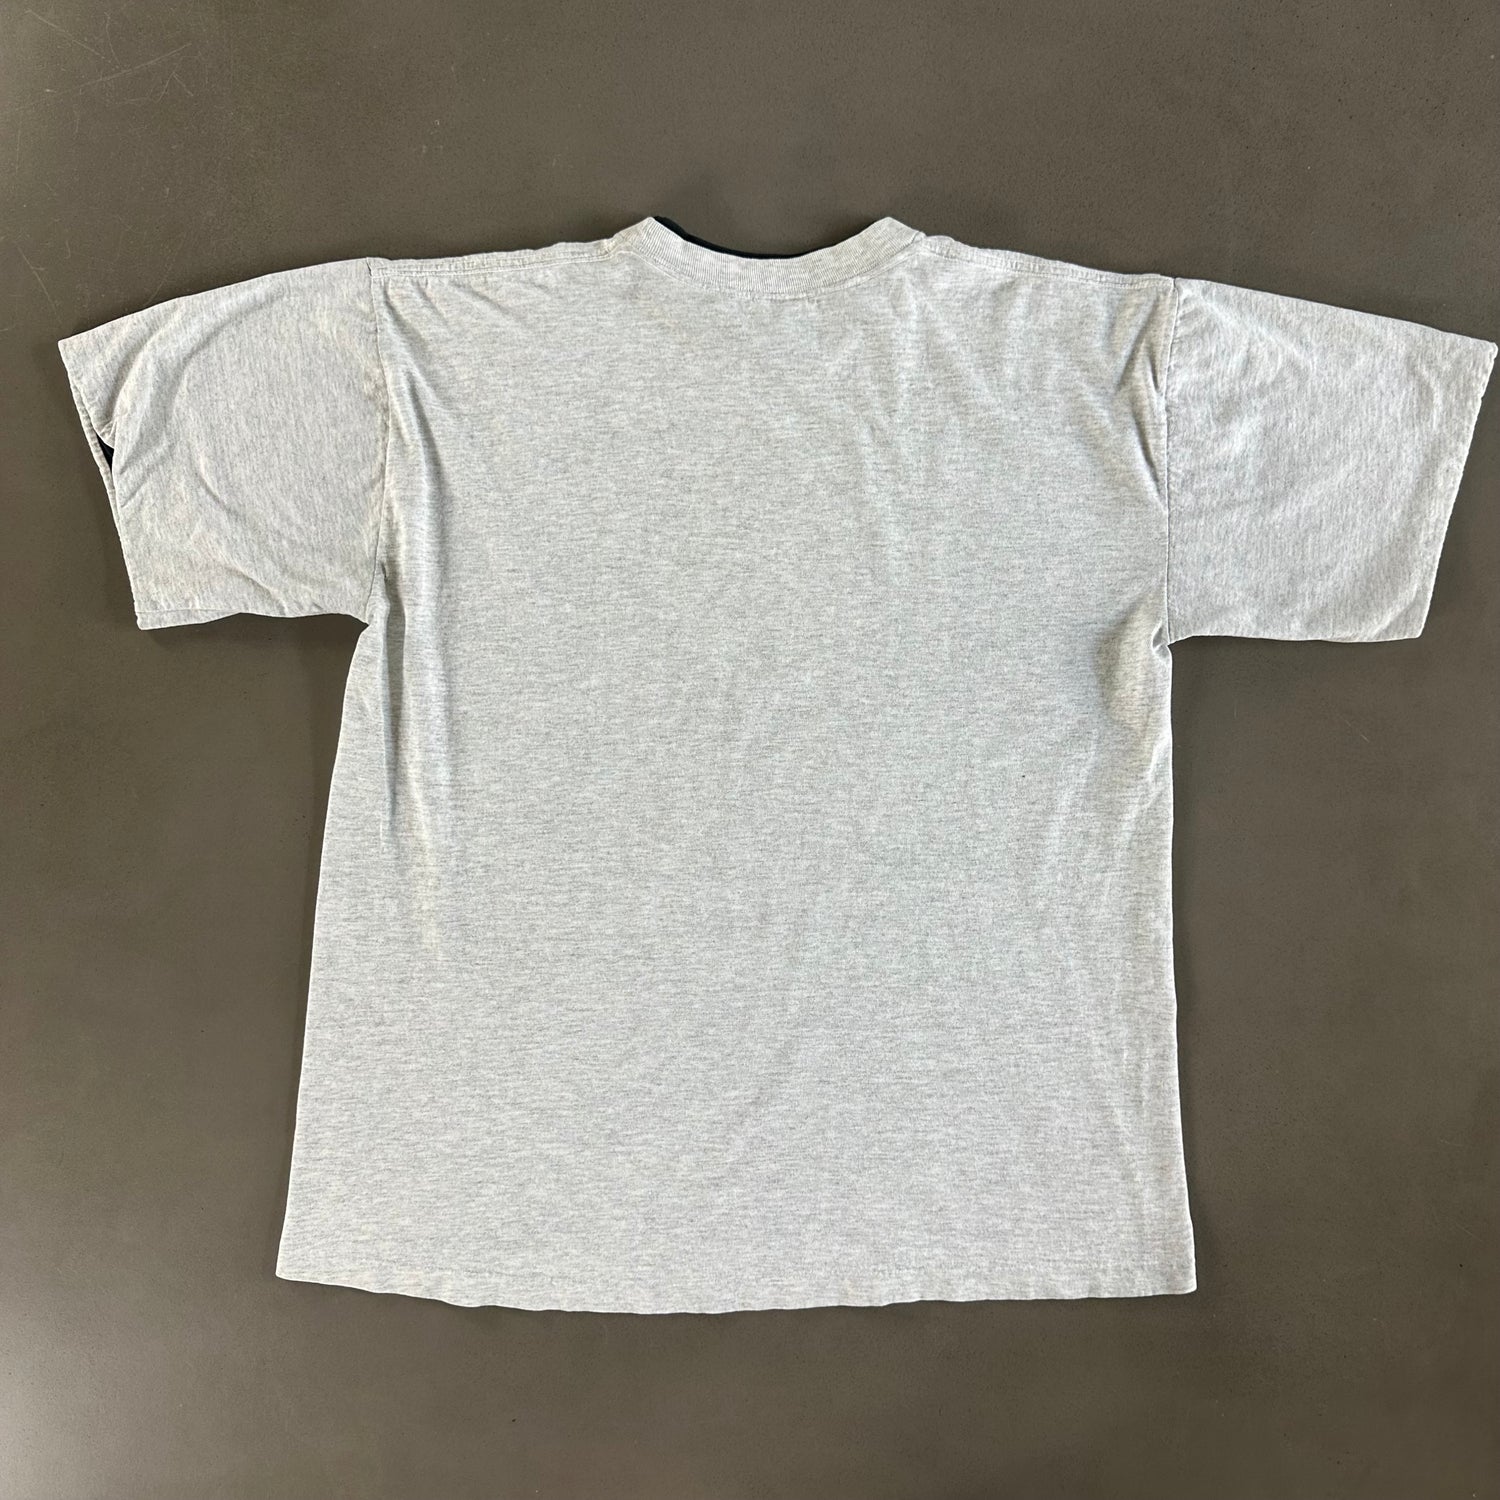 Vintage 1990s Buffalo T-shirt size Large